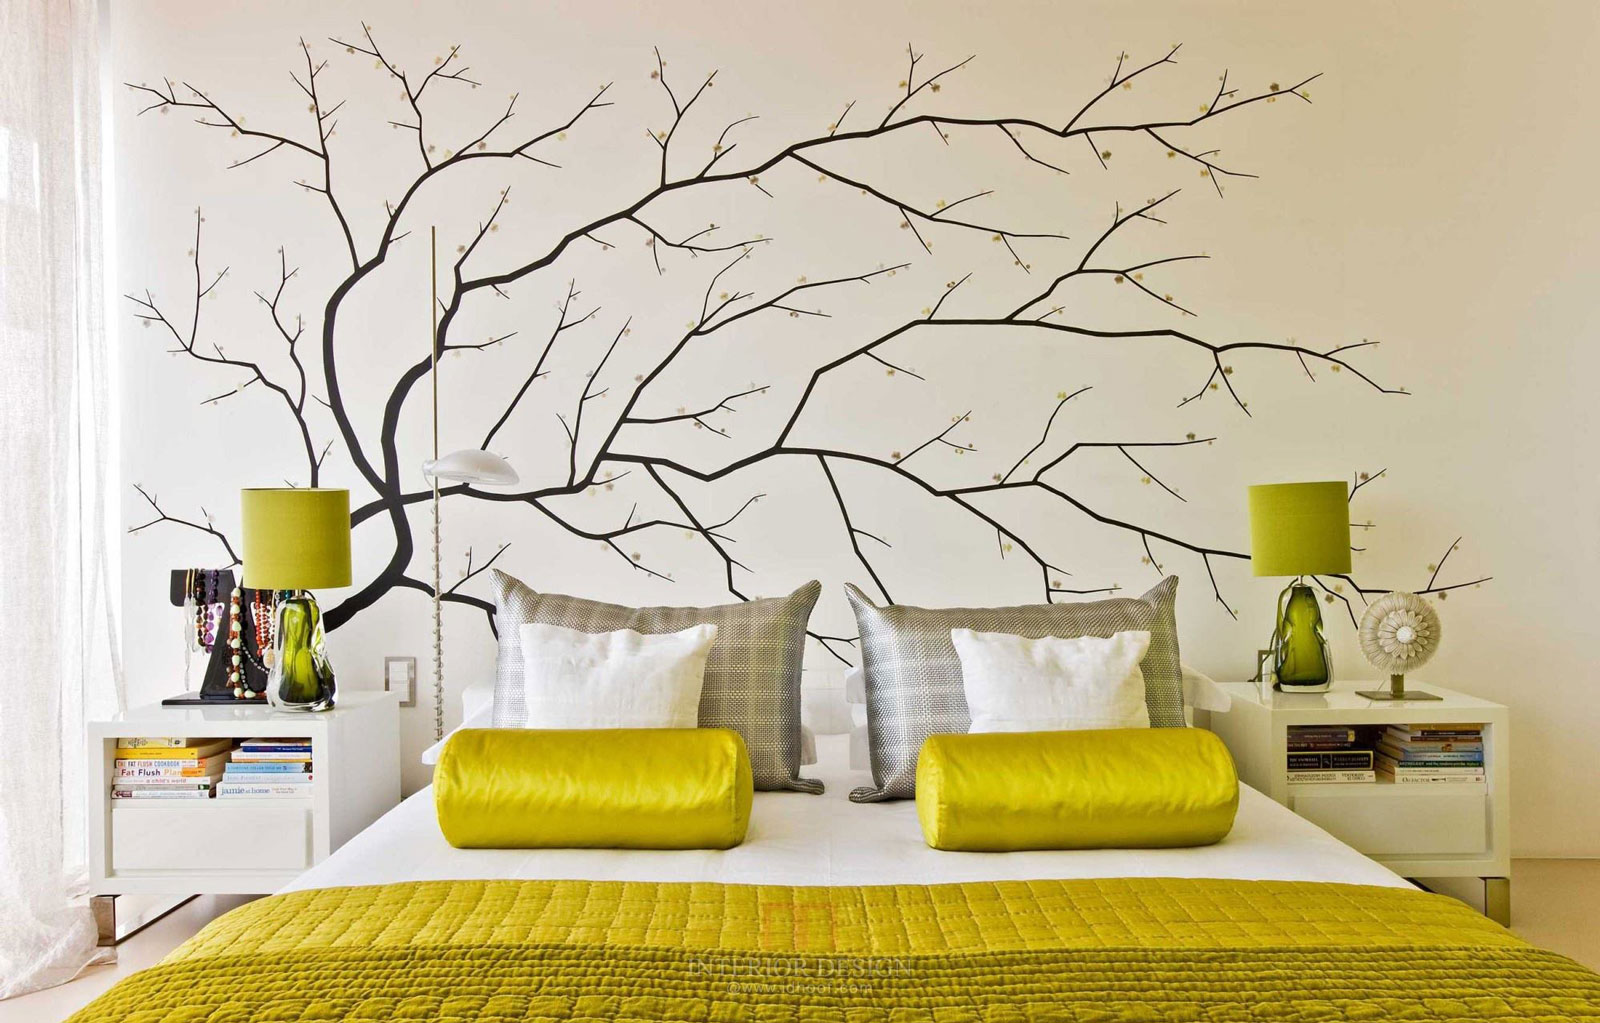 Hướng dẫn cách thiết kế trang trí phòng ngủ dài hẹp tối ưu